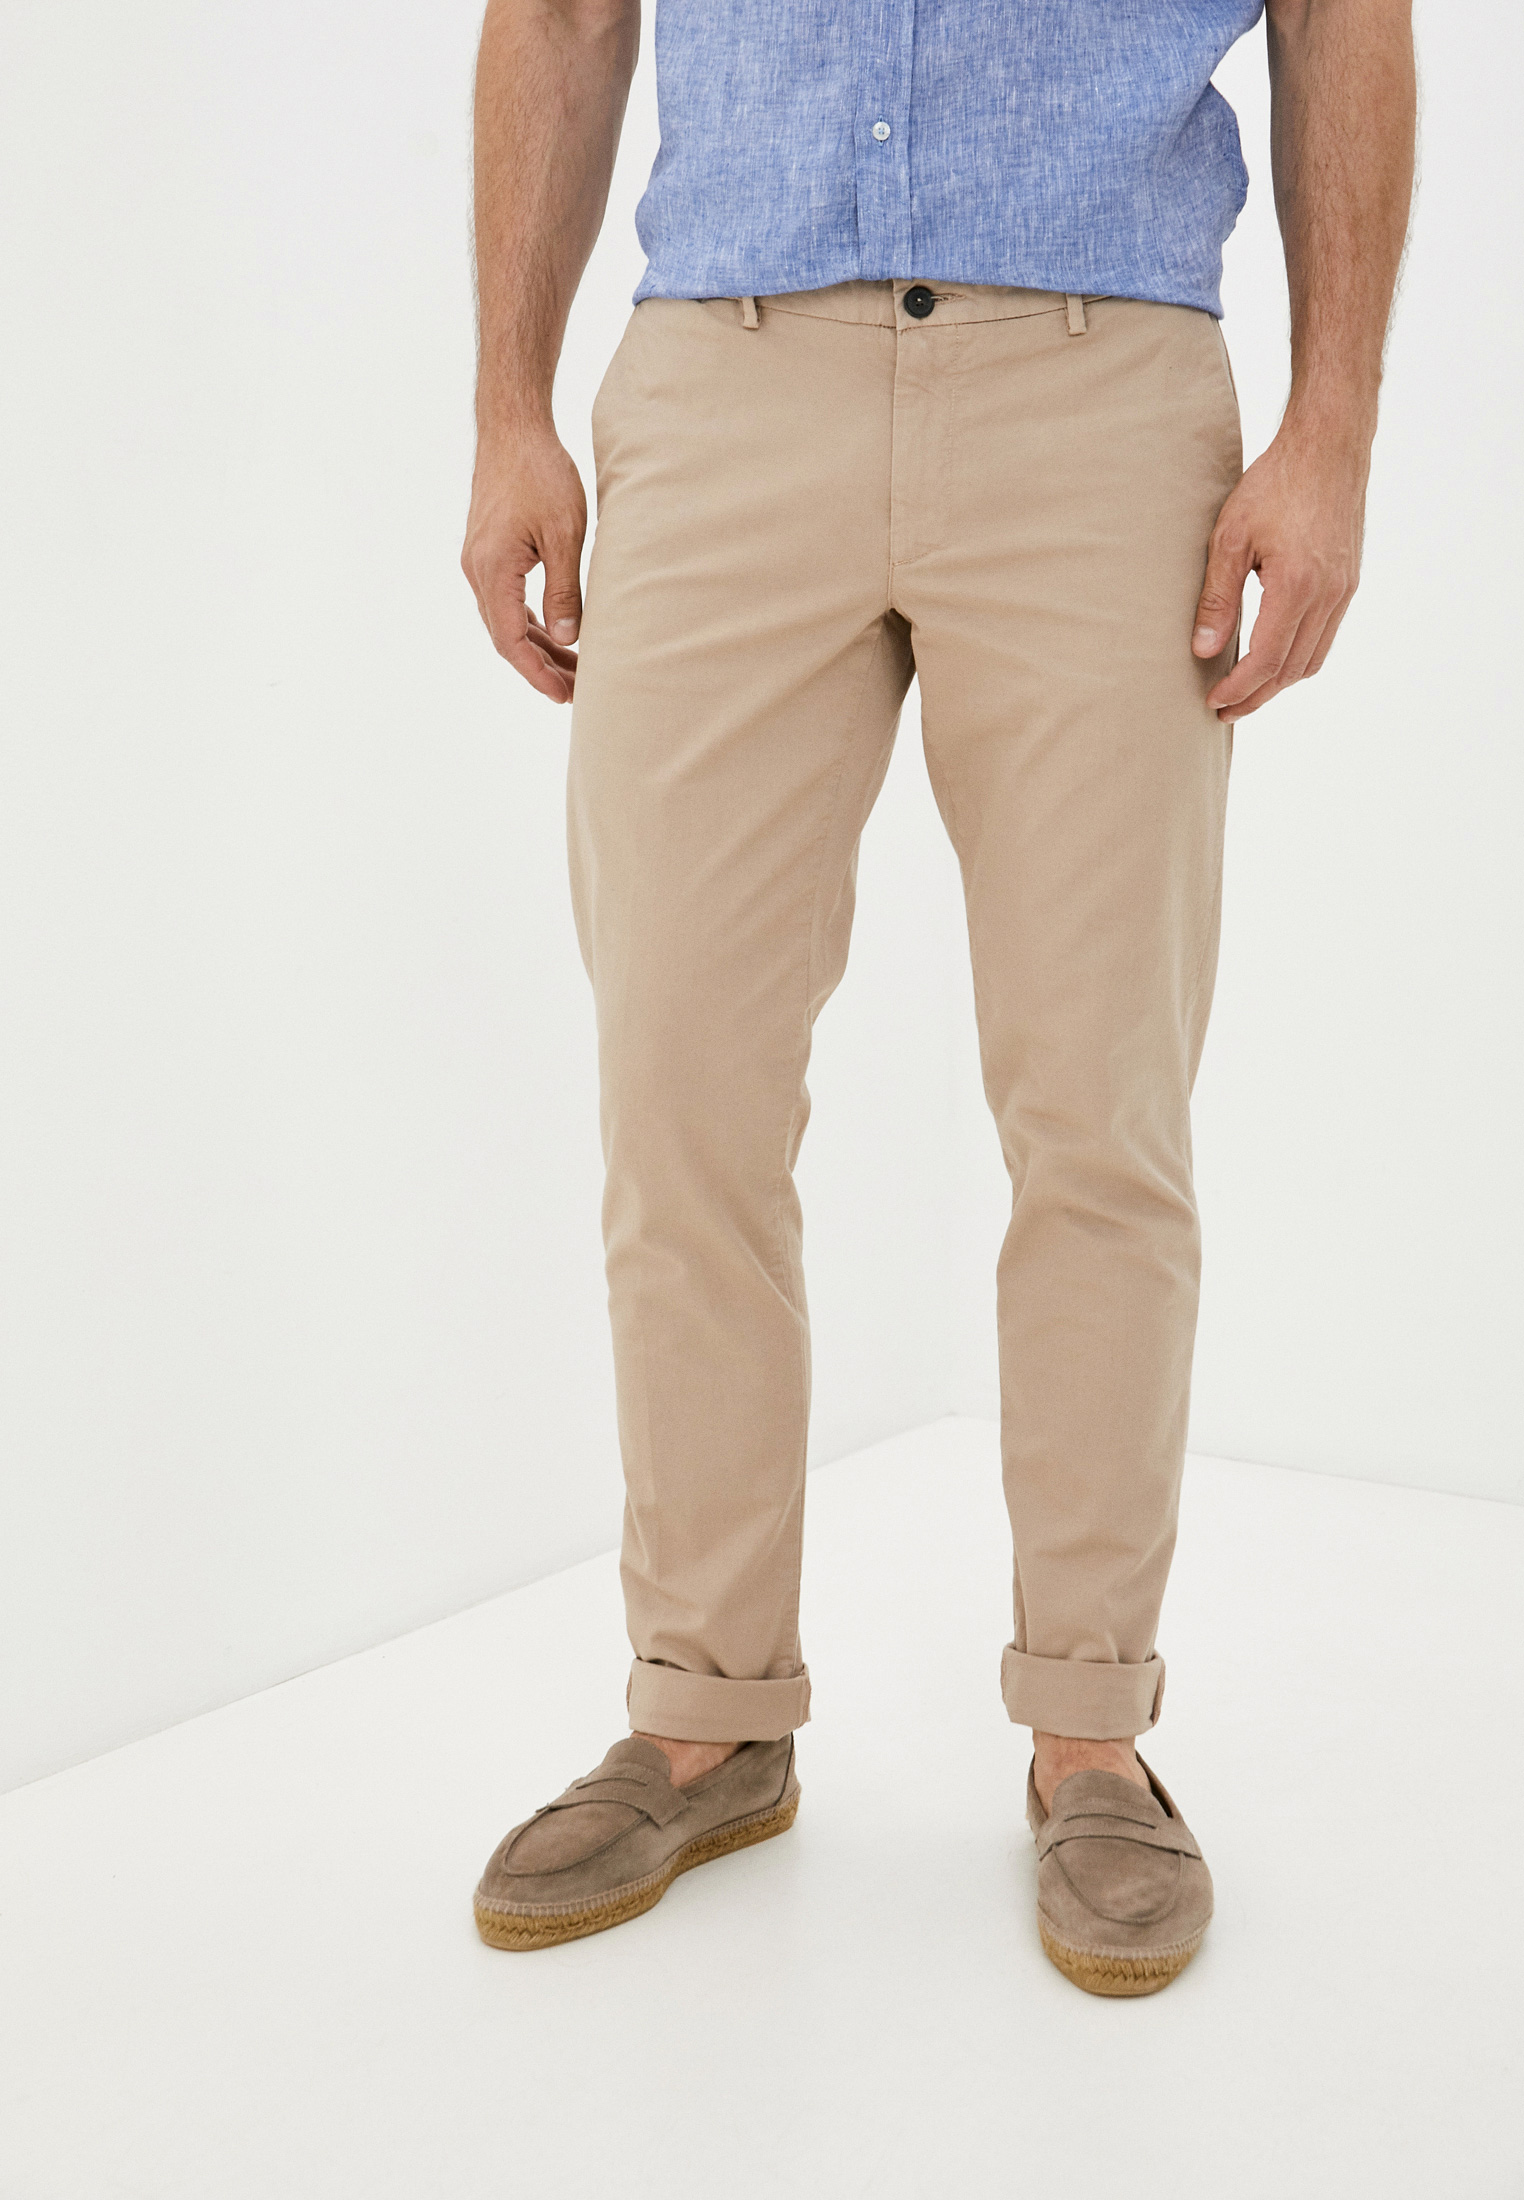 Мужские повседневные брюки Trussardi (Труссарди) 52P00000-1T002543-H-001: изображение 6